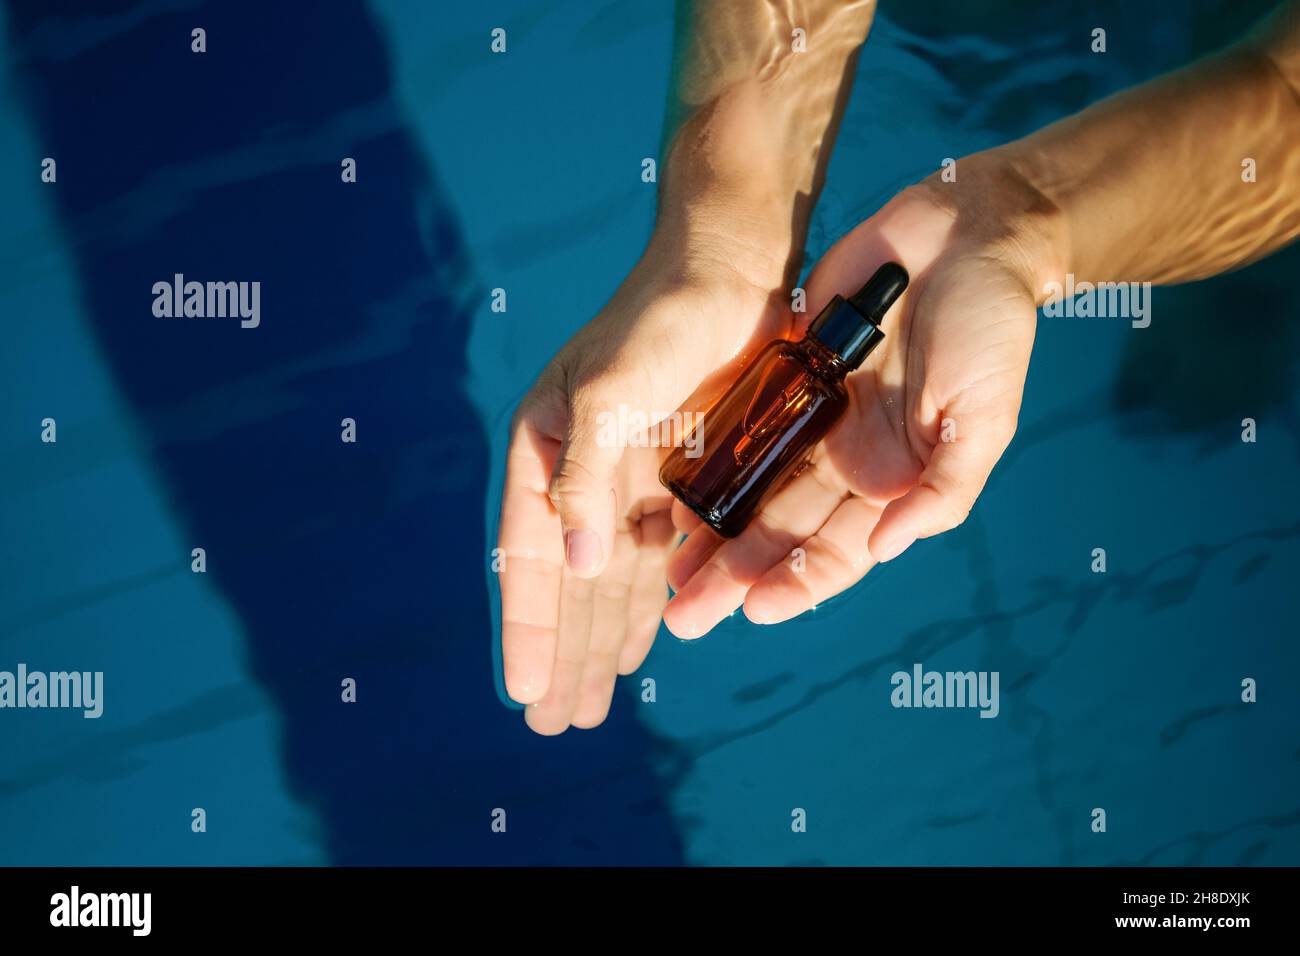 Frau Hand hält leere organische Serum Hautpflegeprodukt Glas Bernstein Flasche für den Einsatz in einem Tag mit schlichten hellblauen Schwimmbad Wasser Hintergrund. Stockfoto